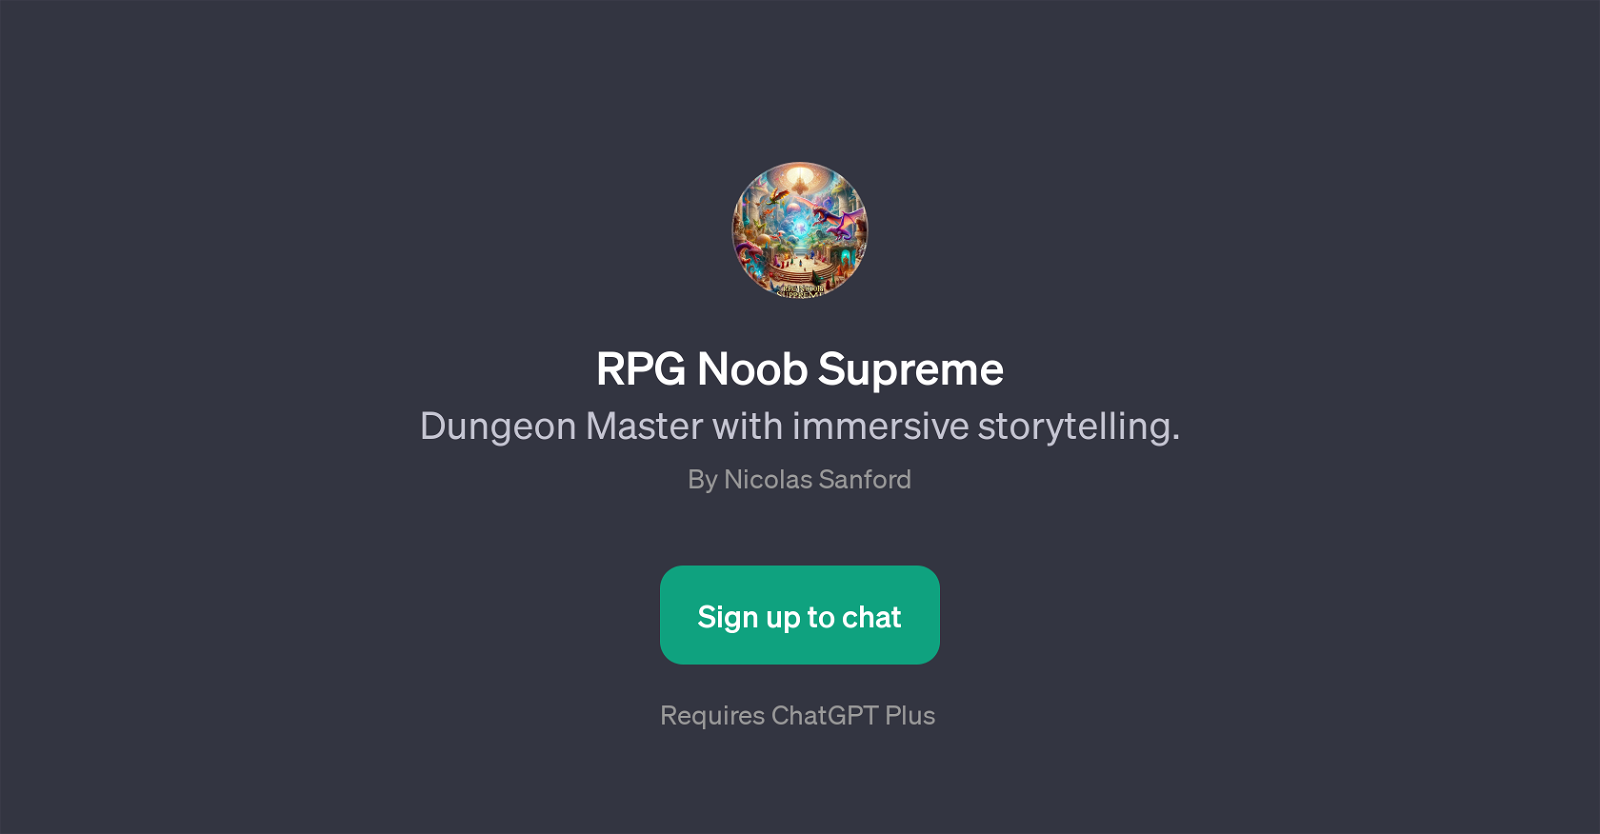 RPG Noob Supreme website